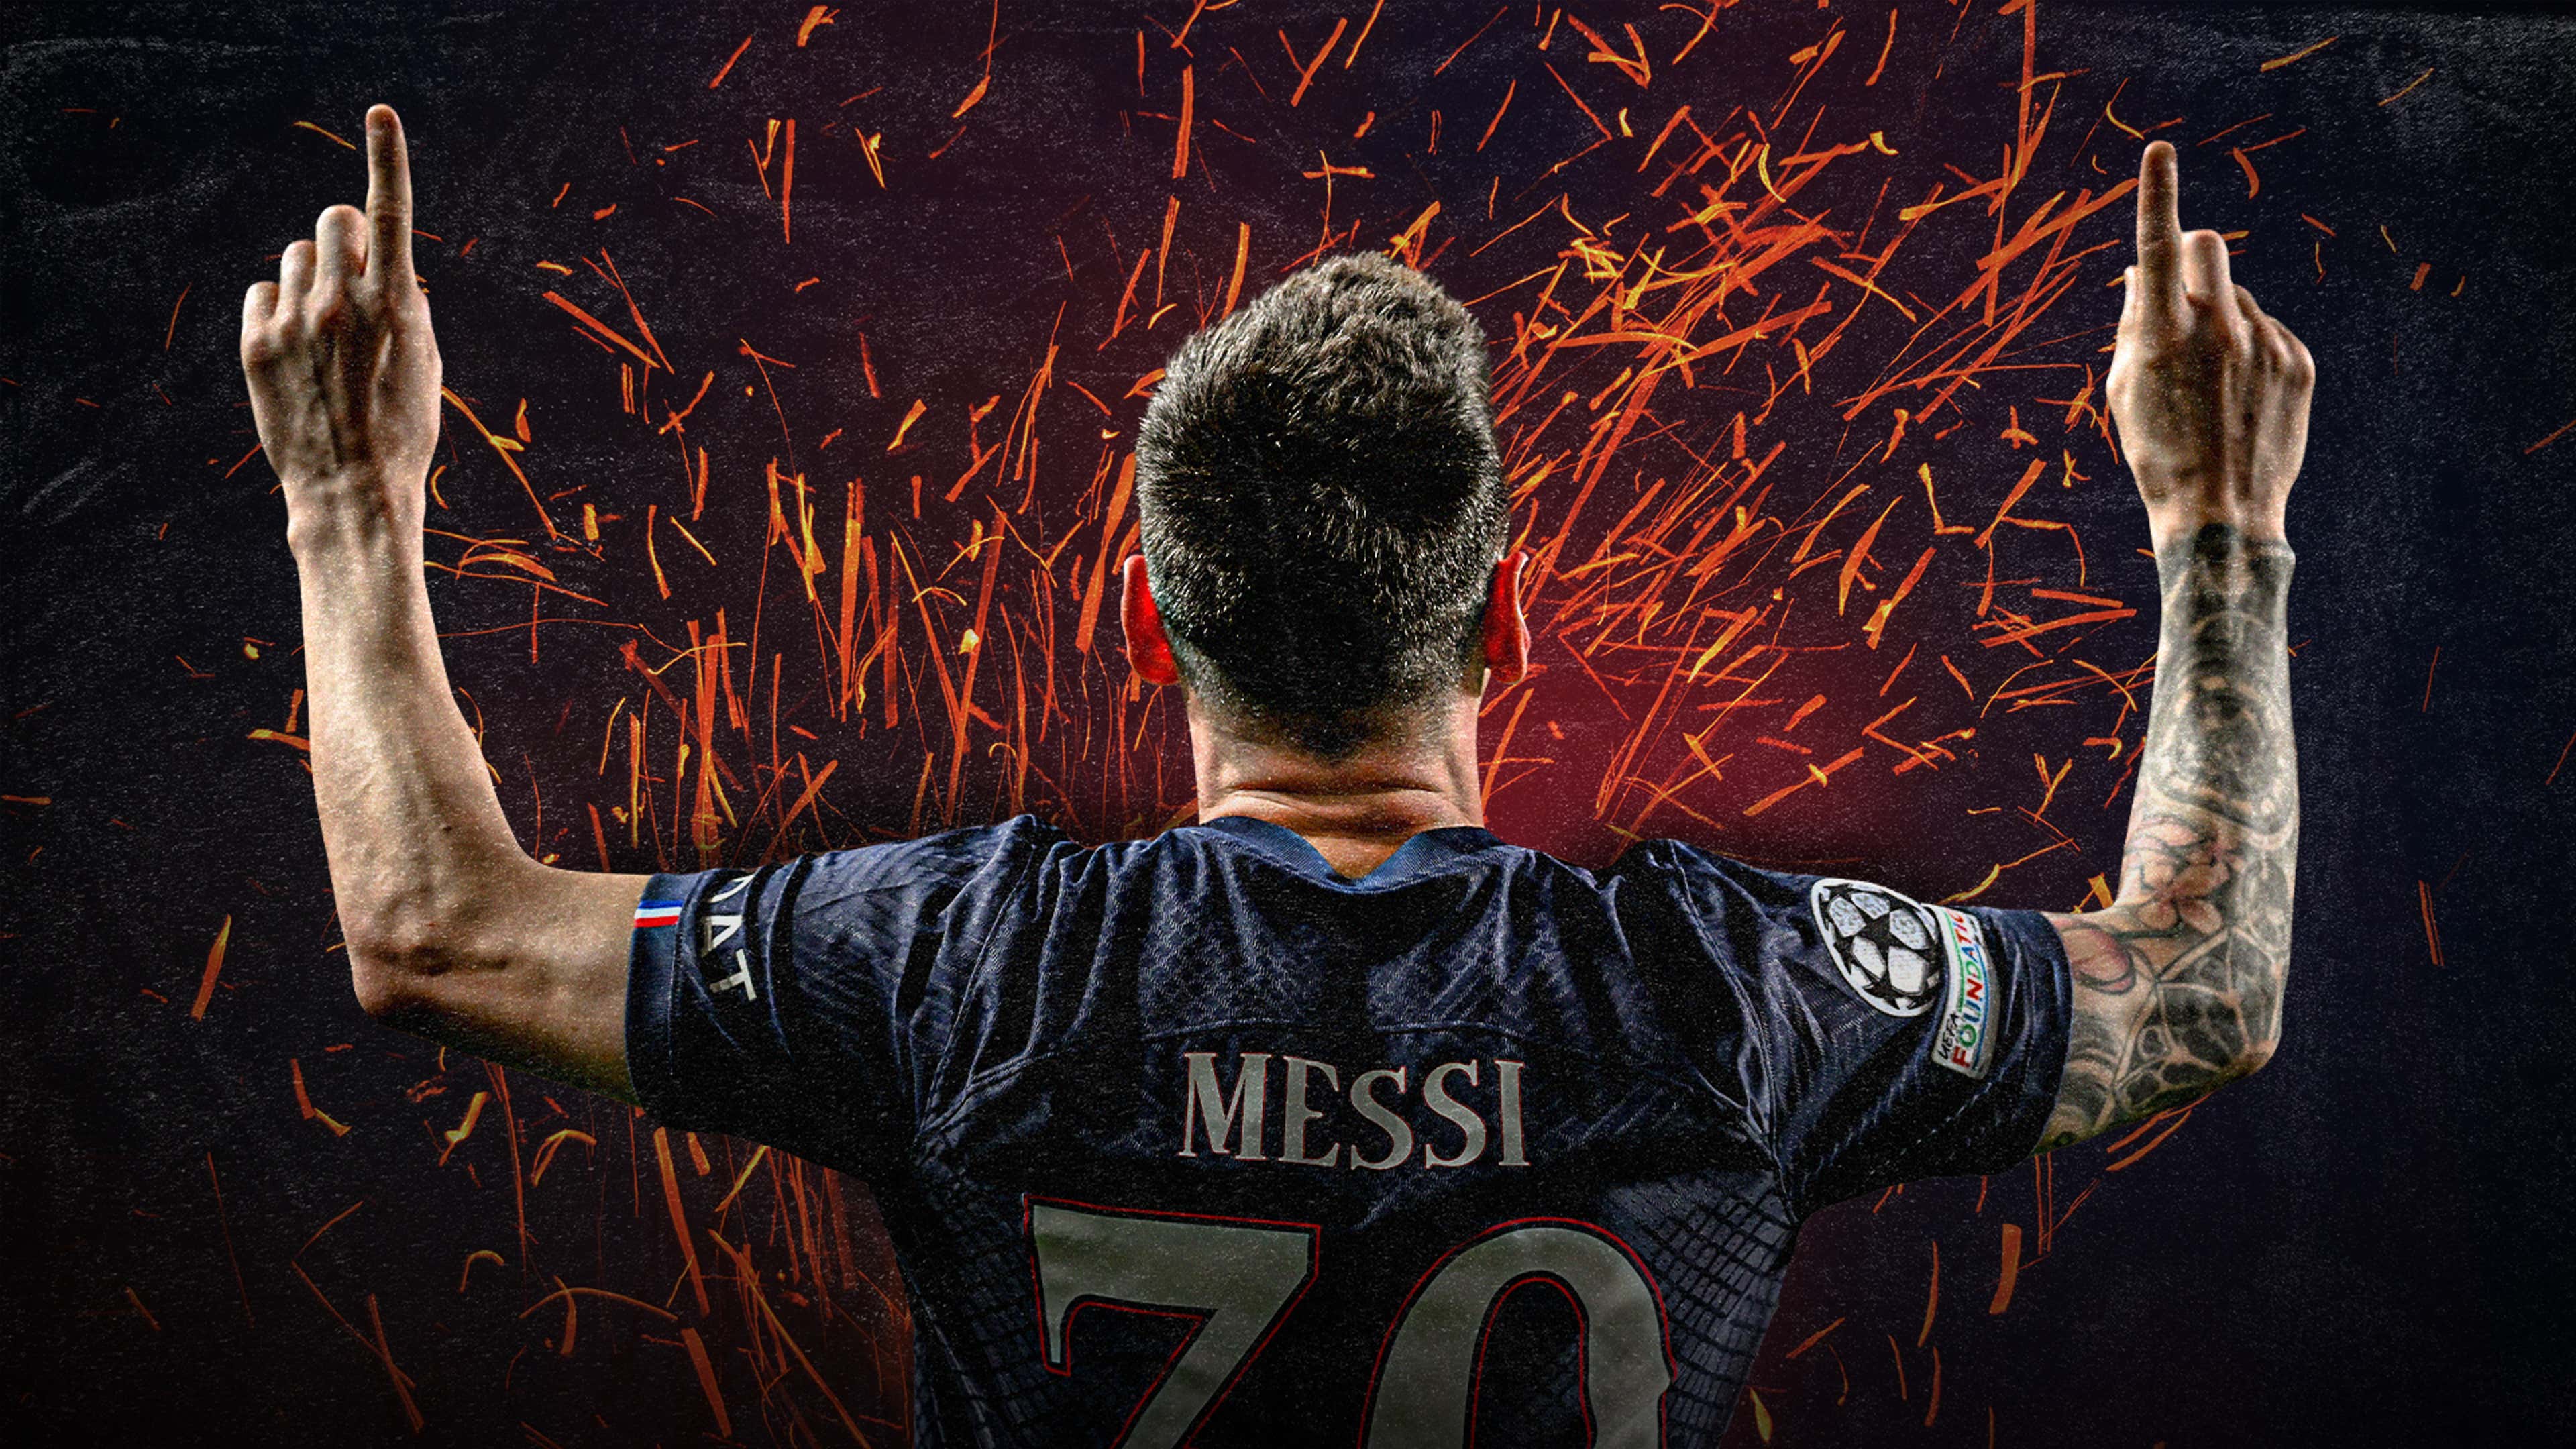 Wallpaper Football 4K Mbappe Messi Ronaldo Neymar for Android